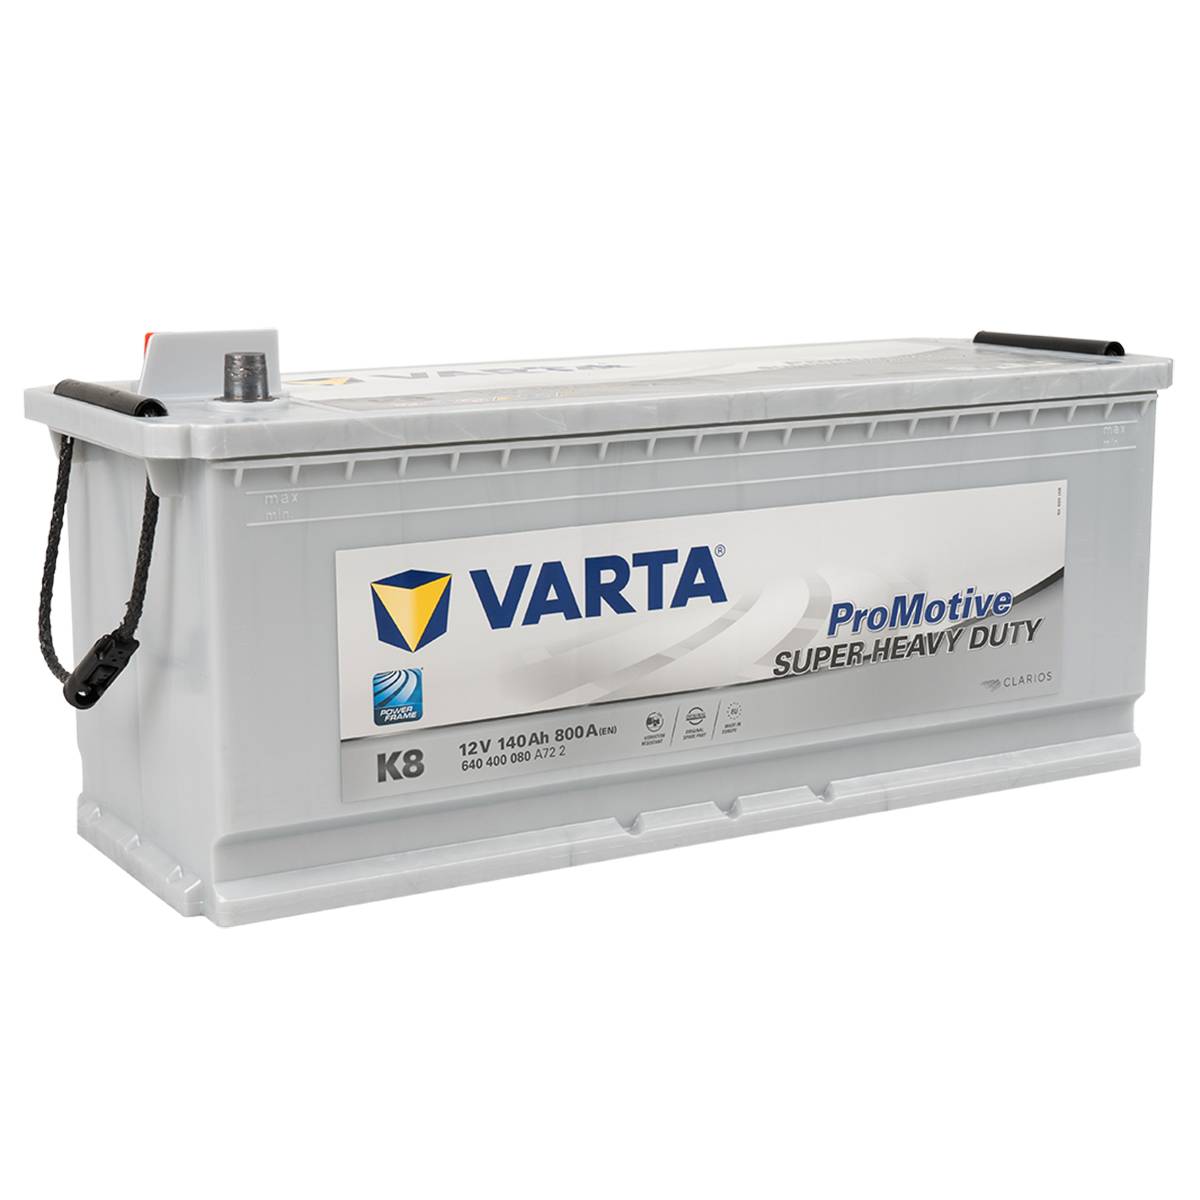 VARTA J1 ProMotive Heavy Duty 12V 125Ah 720A LKW Batterie 625 012 072, Starterbatterie, Caravan, Kfz, Batterien für